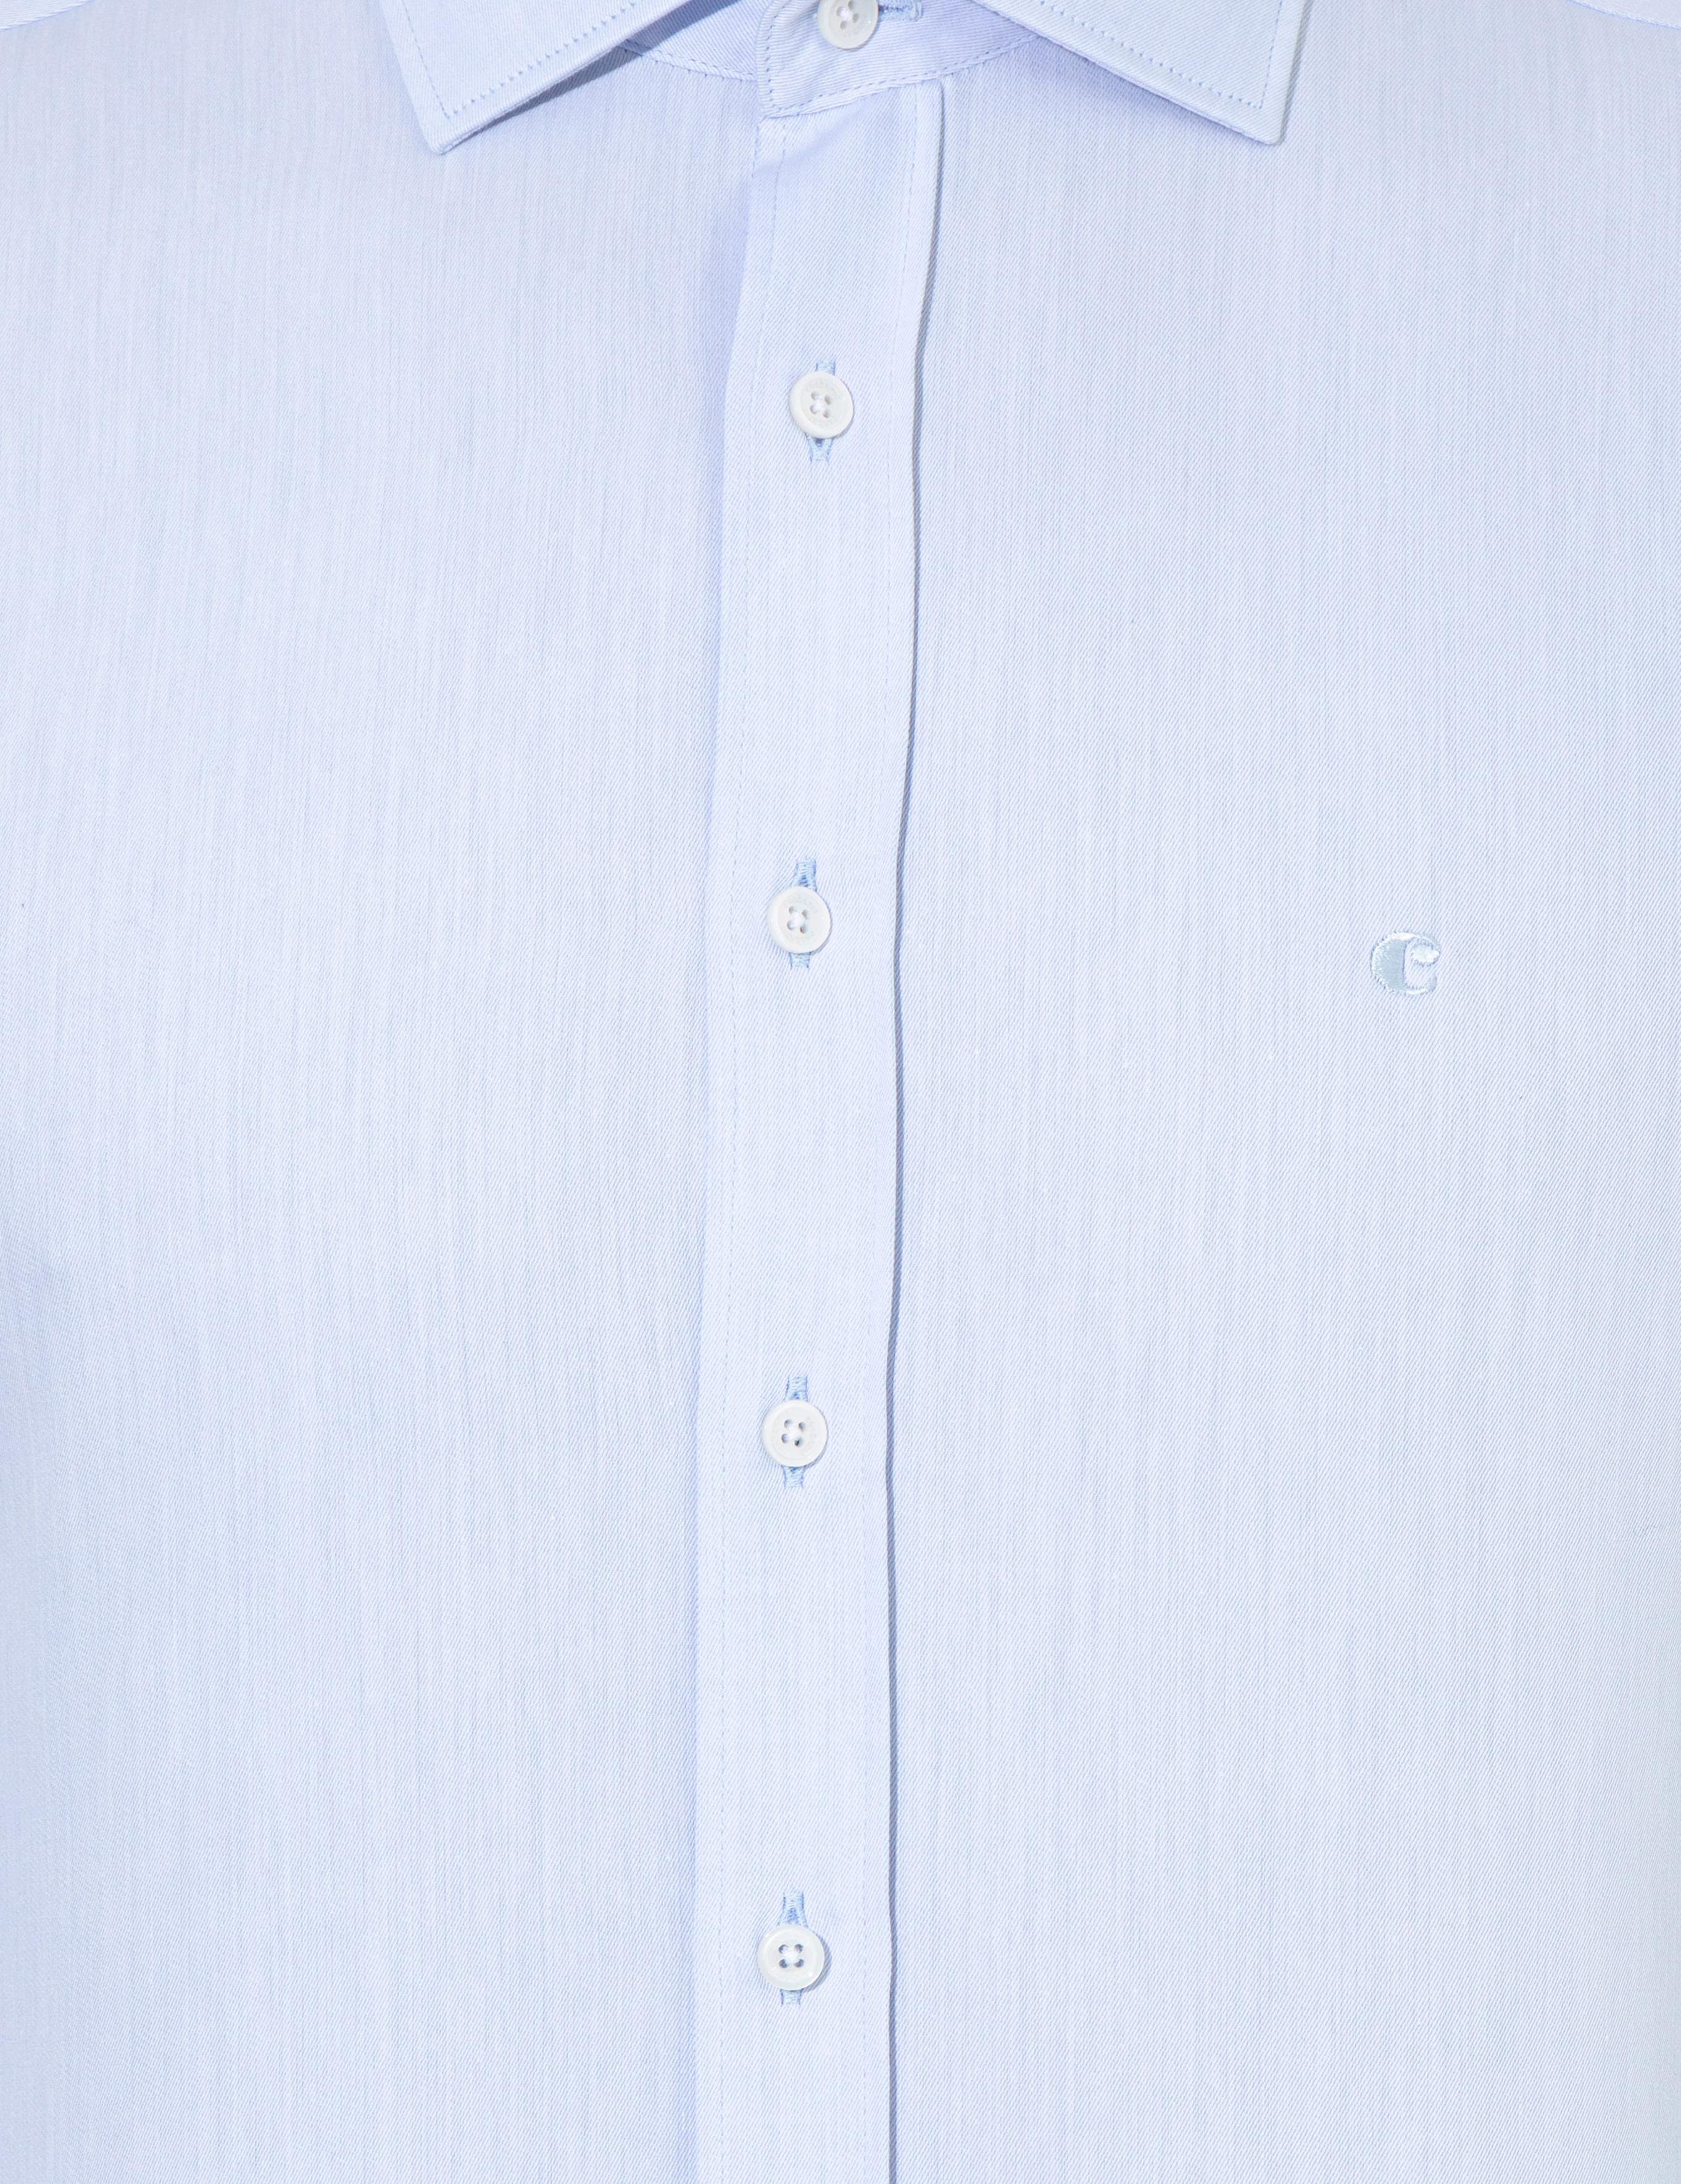 Açık Mavi Slim Fit Uzun Kollu Basic Gömlek - 50259812008